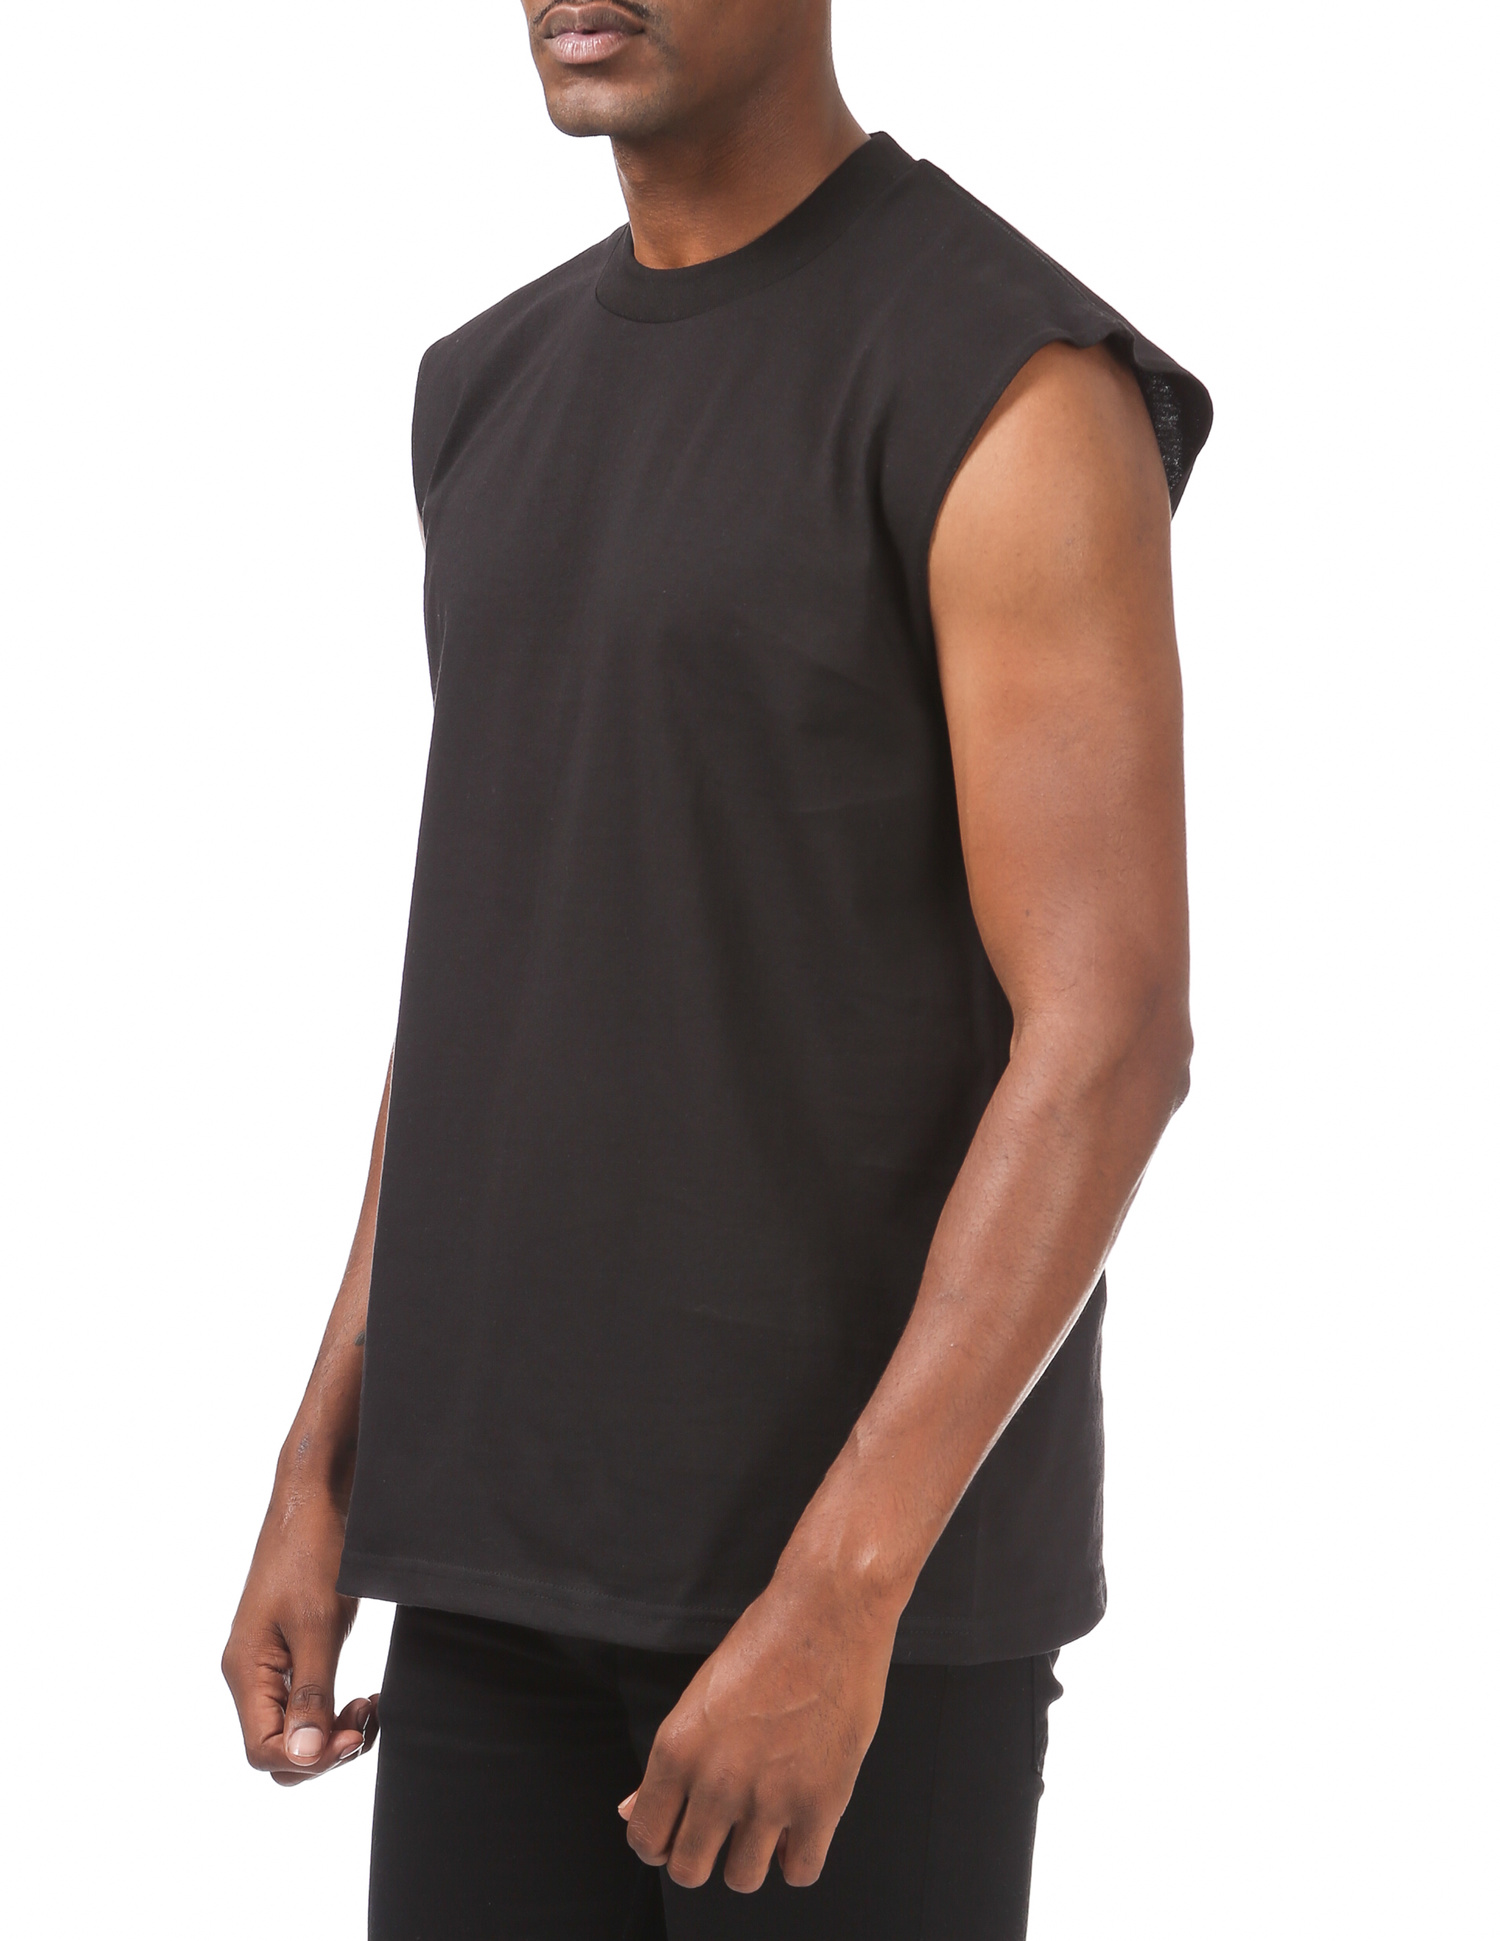 113 BLACK Heavyweight Sleeveless Muscle T-Shirt - Shirts